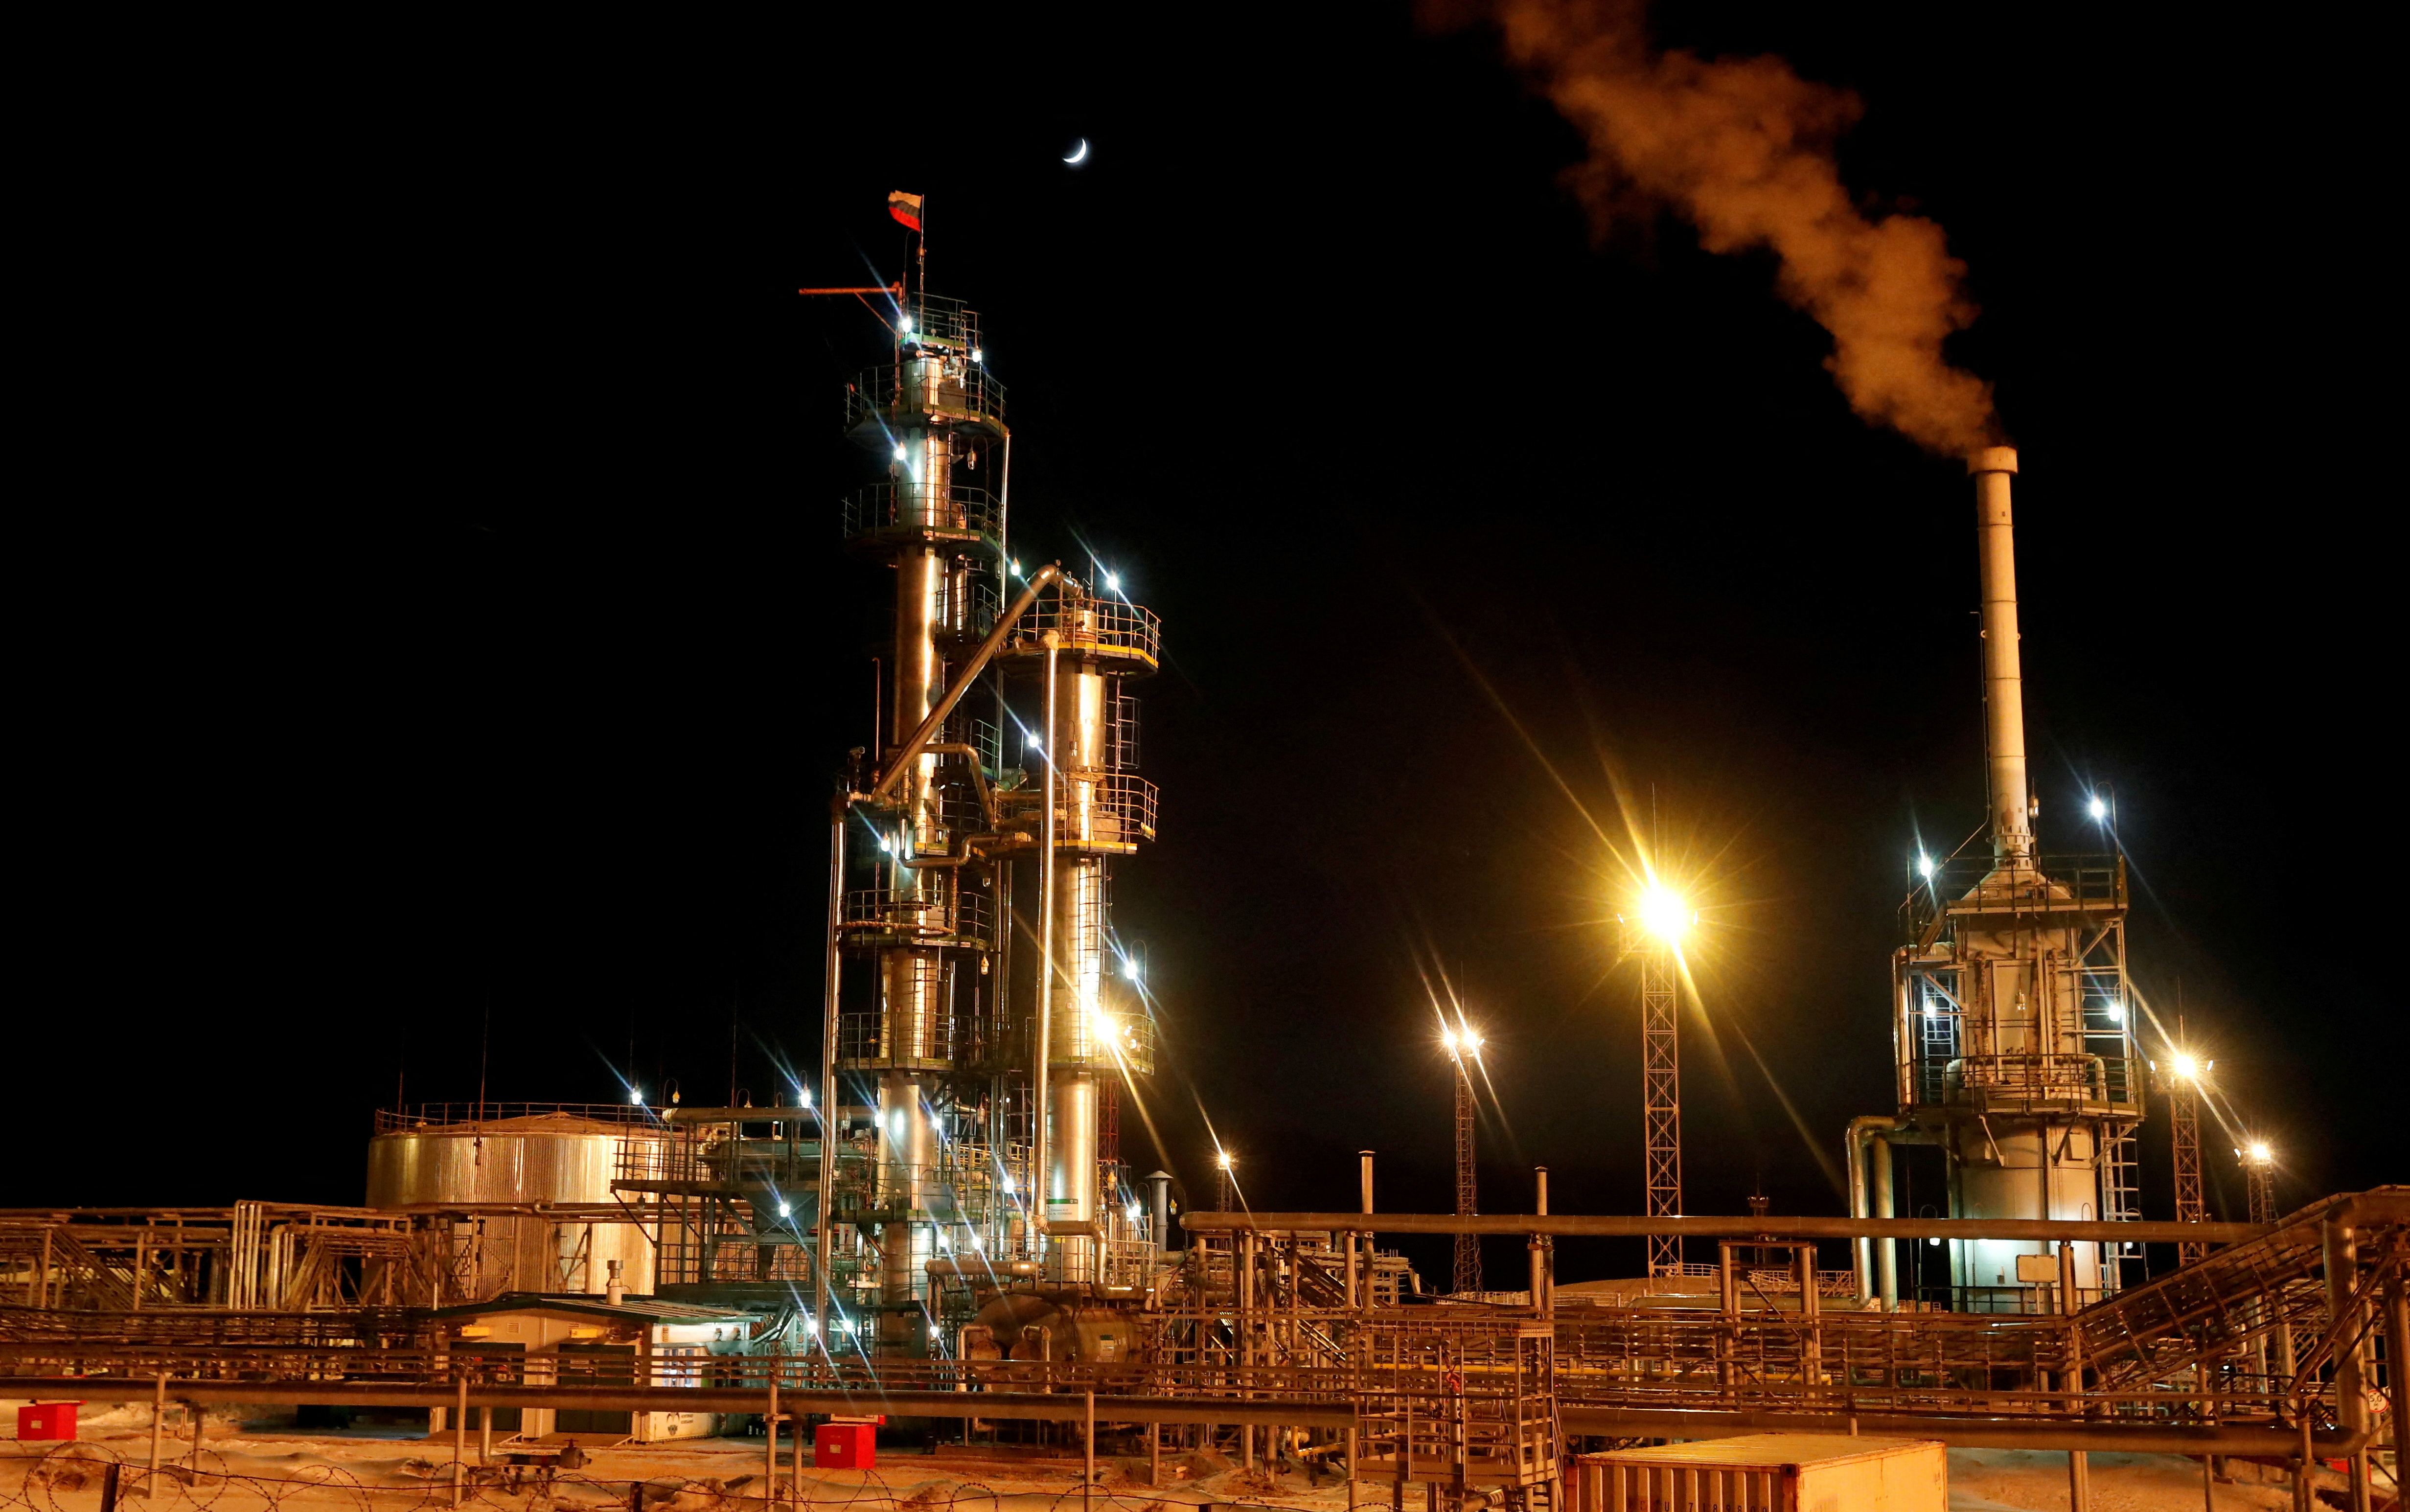 A Russian state flag flies on the top of a diesel plant in the Irkutsk Oil Company-owned Yarakta Oil Field in Irkutsk Region